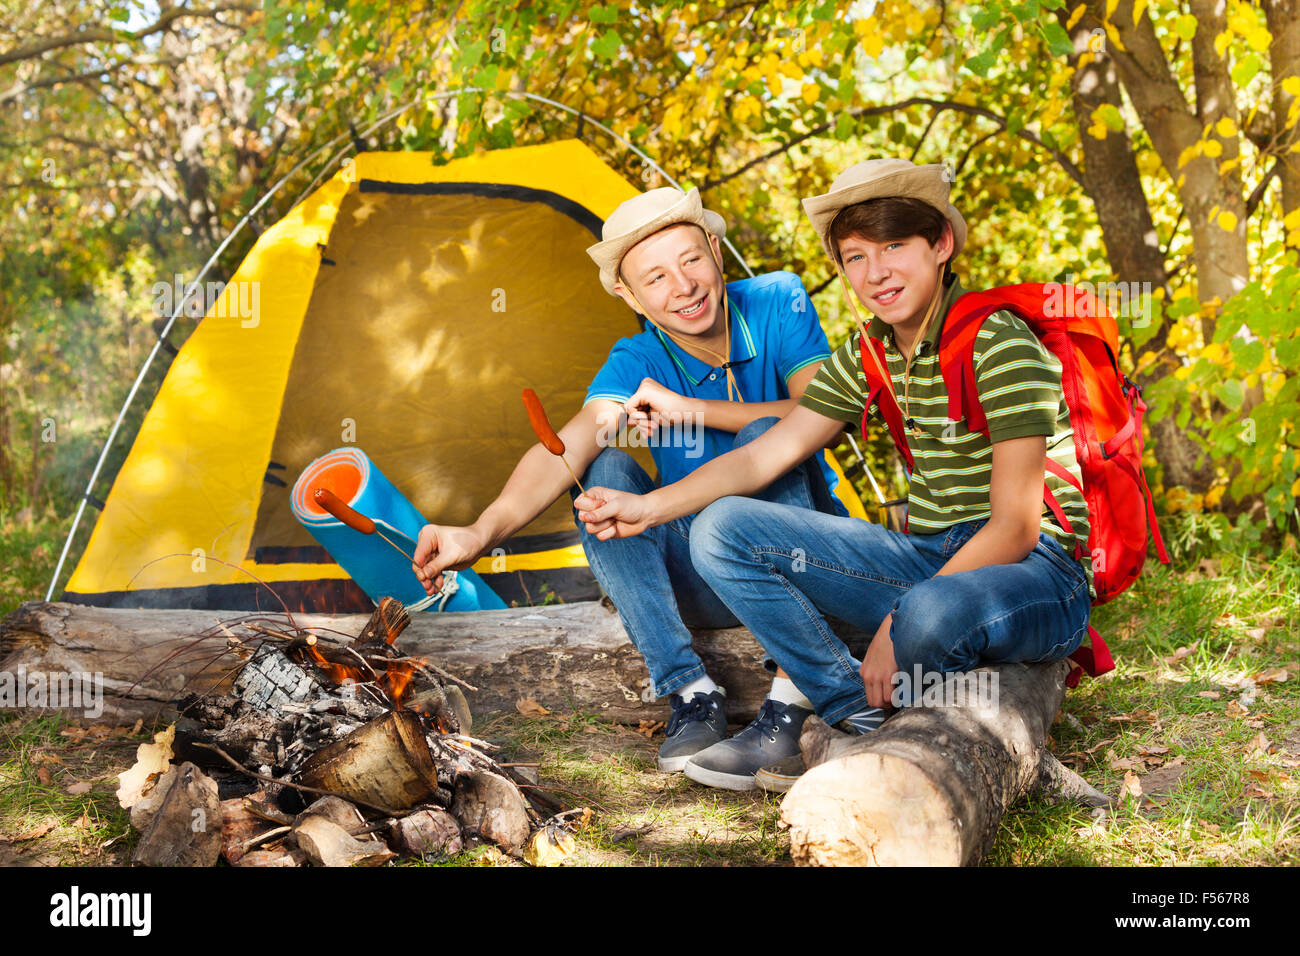 Teenie jungen sitzen auf Campingplatz mit Würstchen-sticks Stockfoto